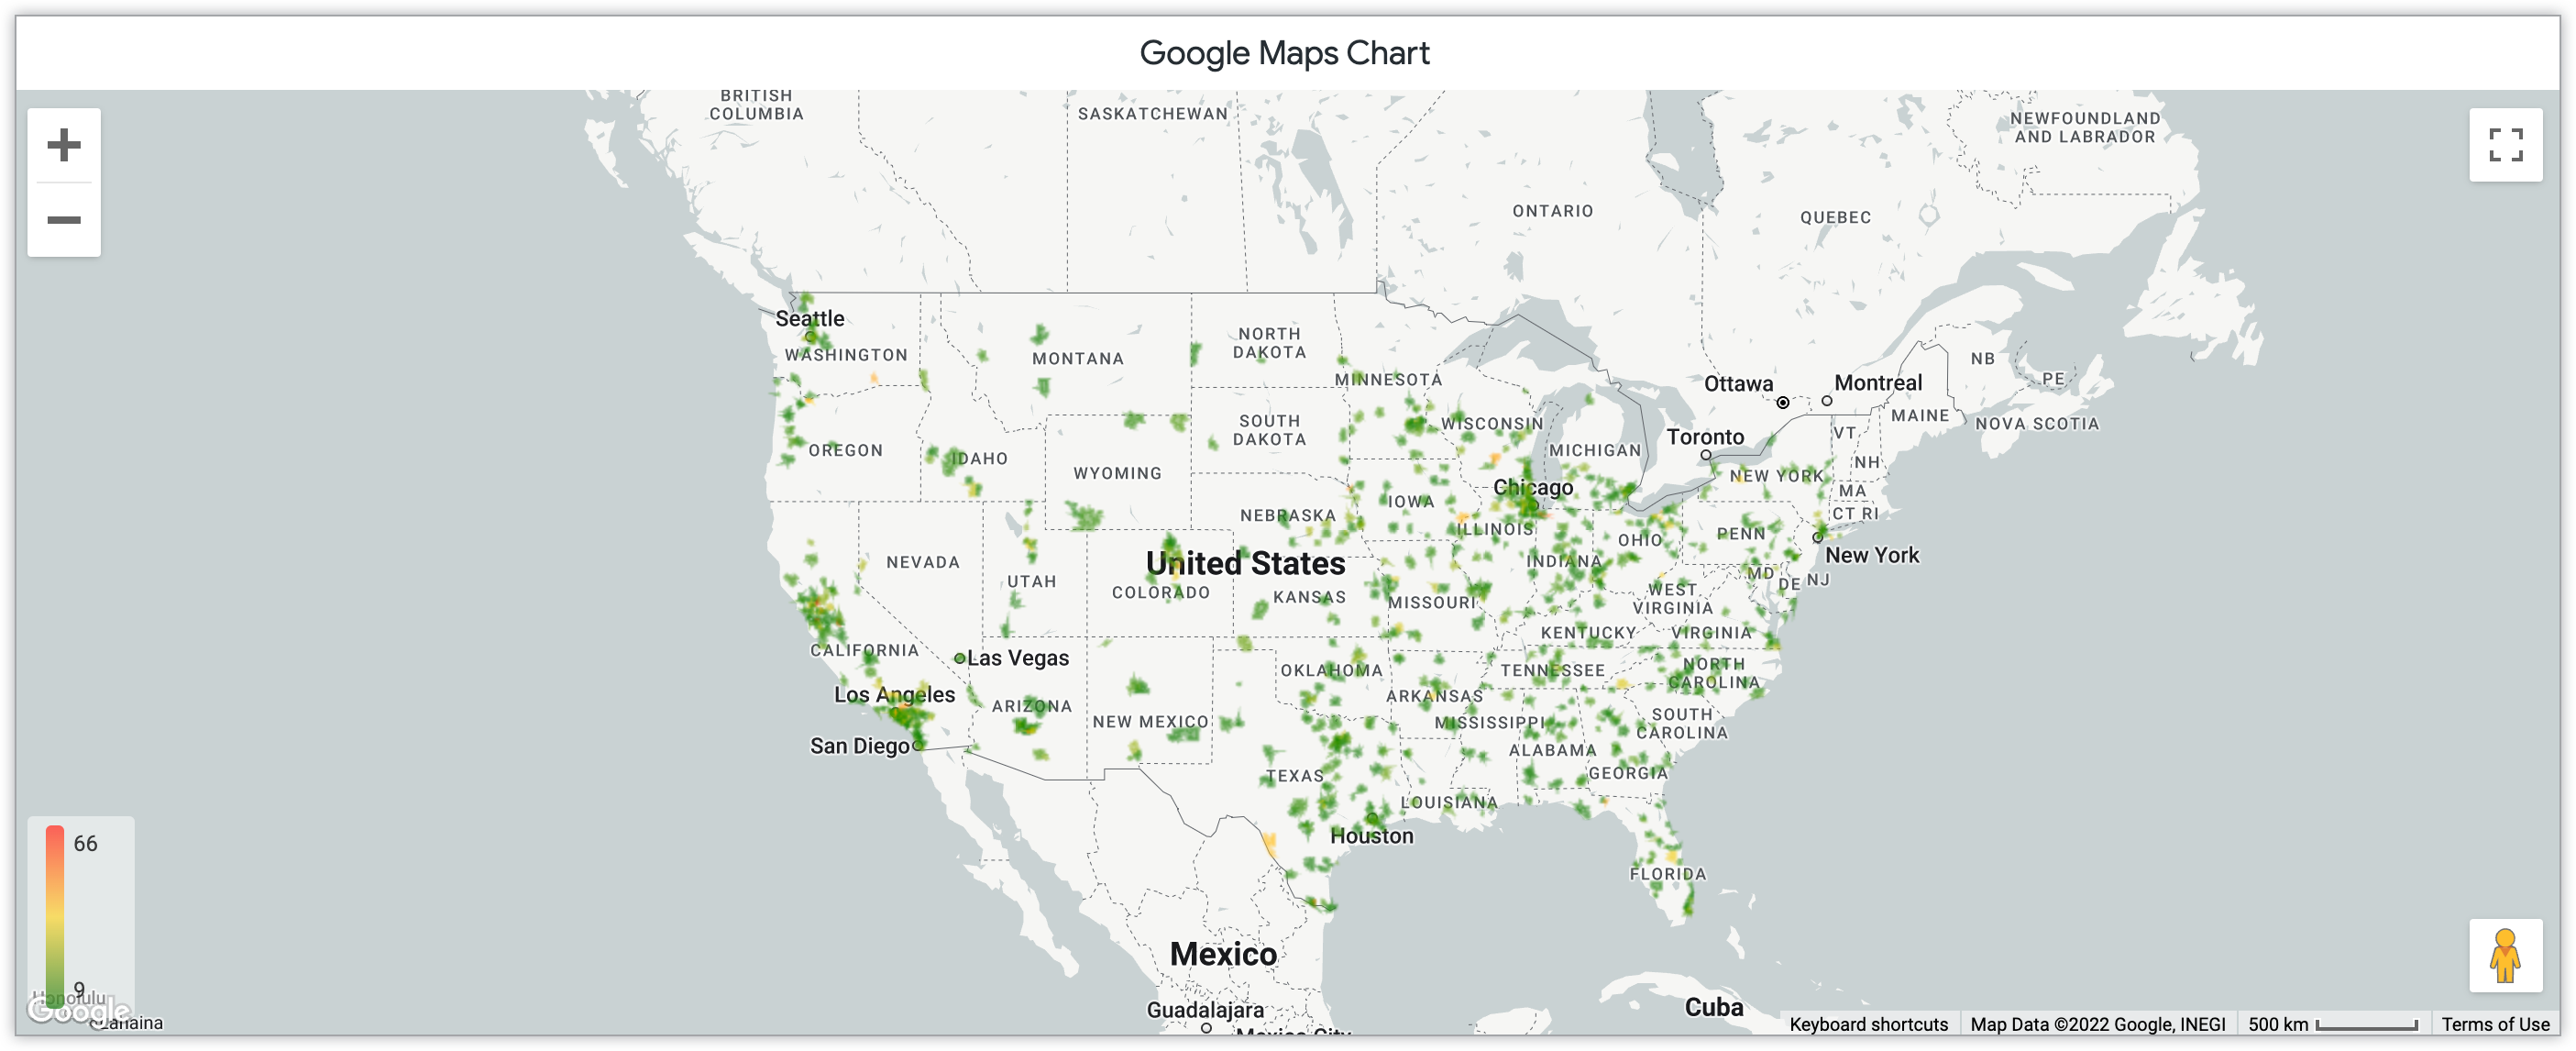 Grafico di Google Maps della mappa termica che mostra la quantità di prodotti venduti al mese nei codici postali negli Stati Uniti.